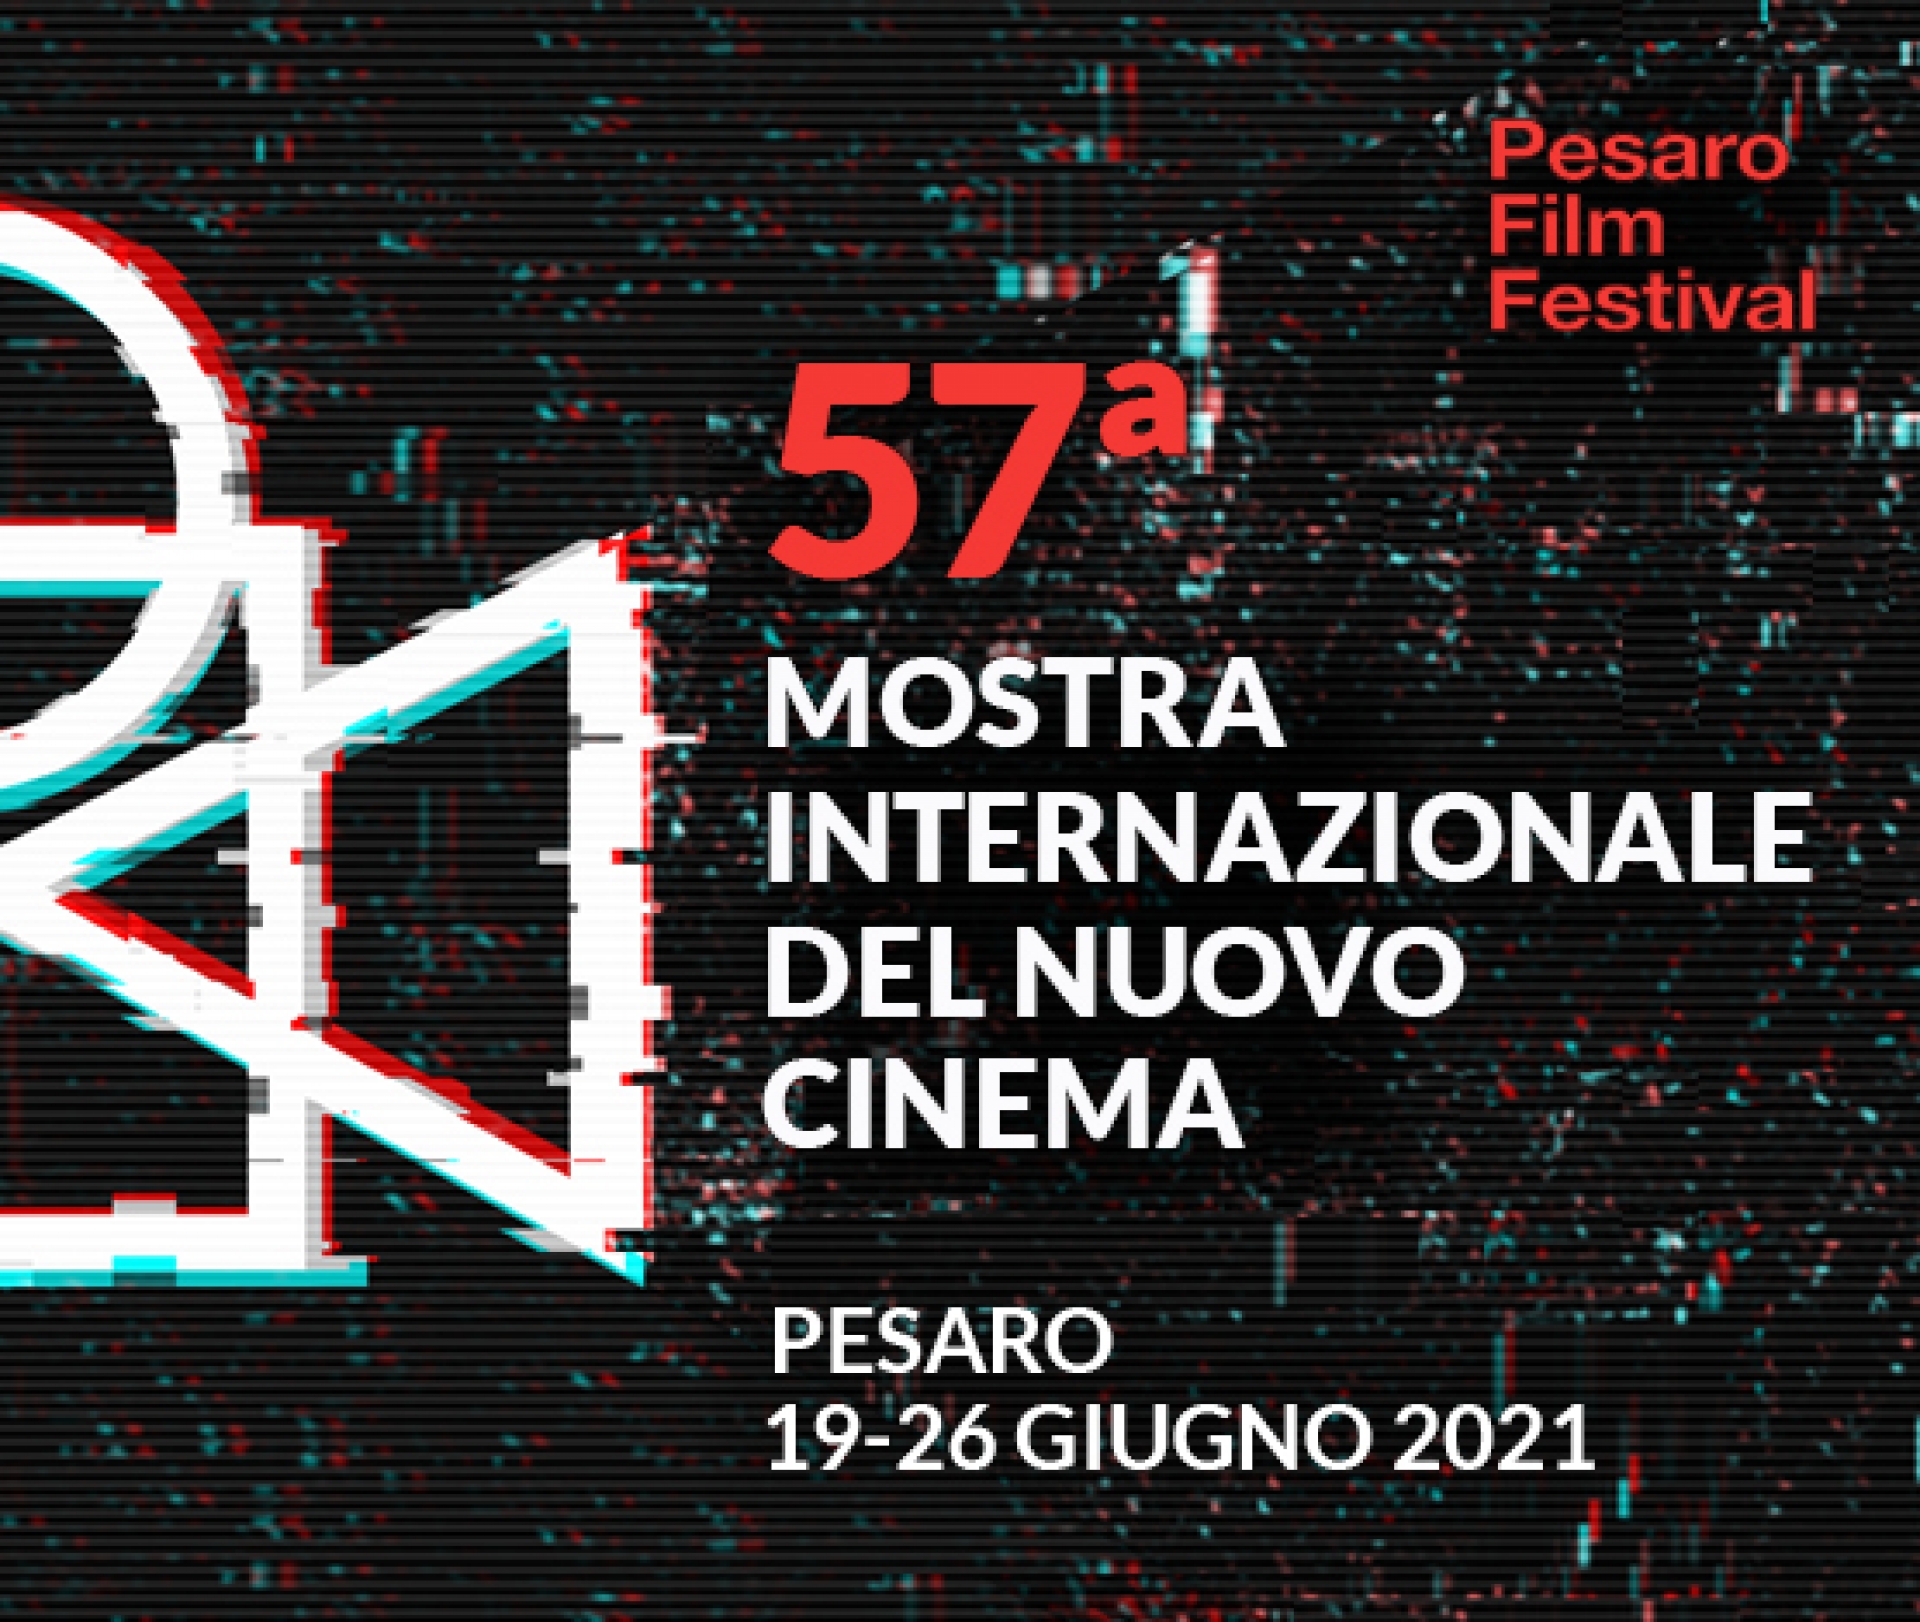 Annunciate le date della 57esima edizione: a Pesaro dal 19 al 26 giugno 2021